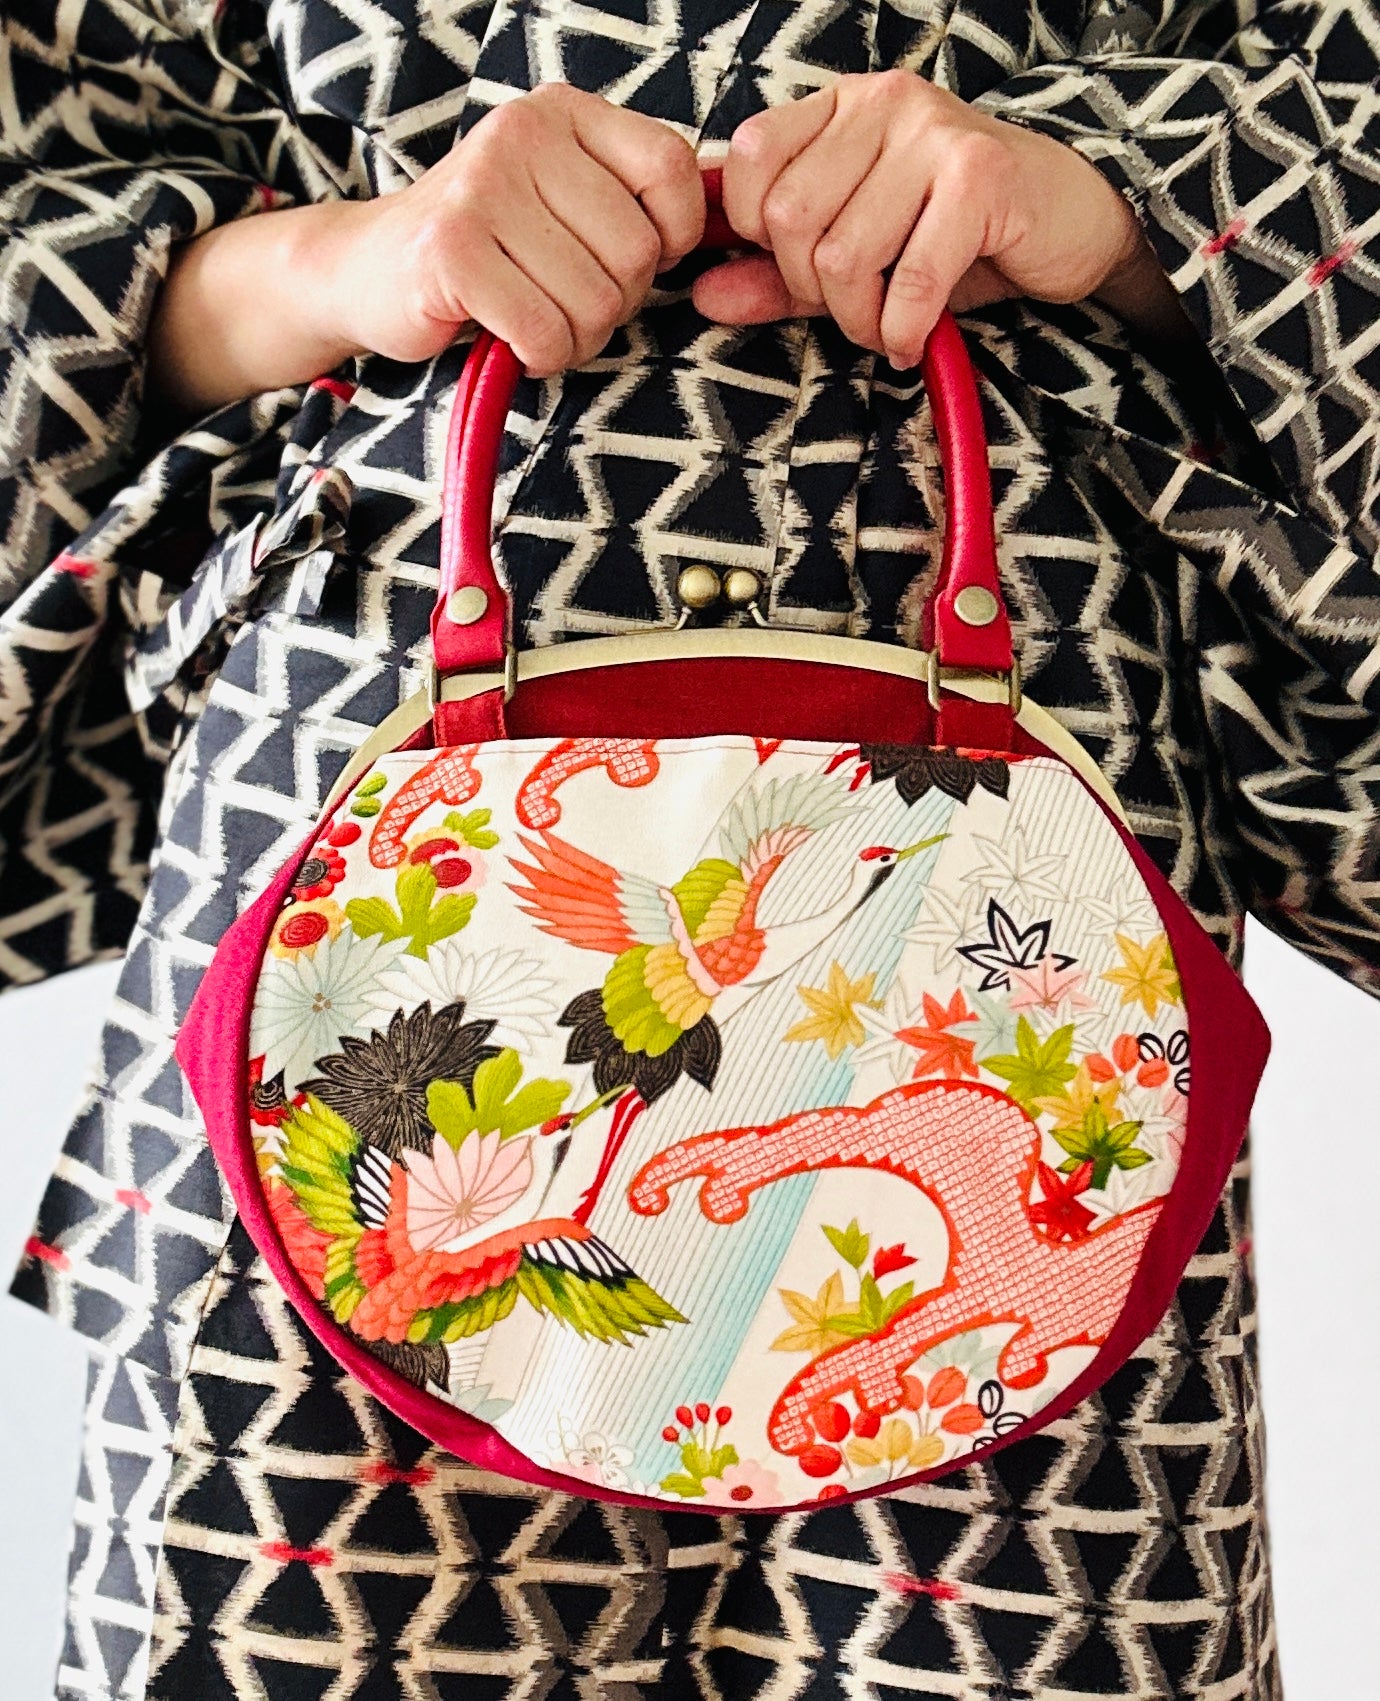 【Rot/Kran】 Gamaguchi-en/Handtasche, Kupplung, Beutel, japanische Tasche, Umhängetasche, japanische Geschenke